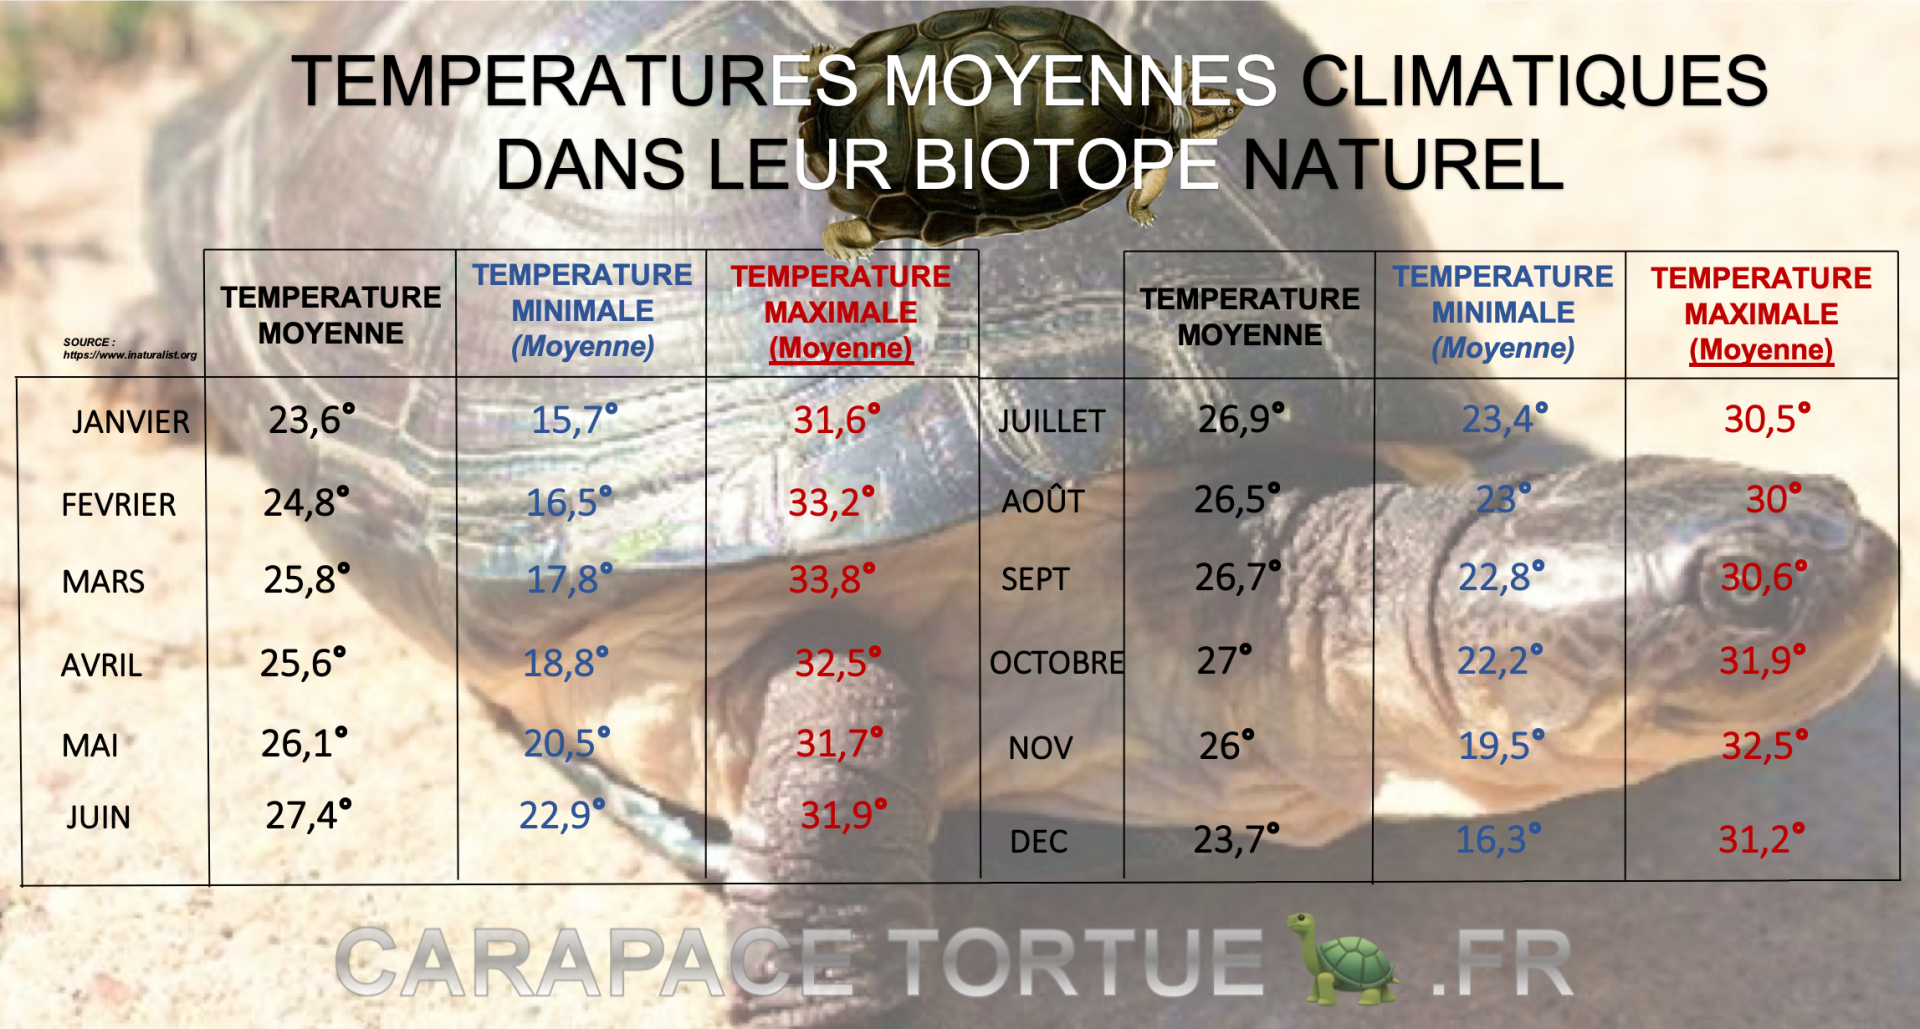 Temperatures cliamtiques biotope pelusios castaneus